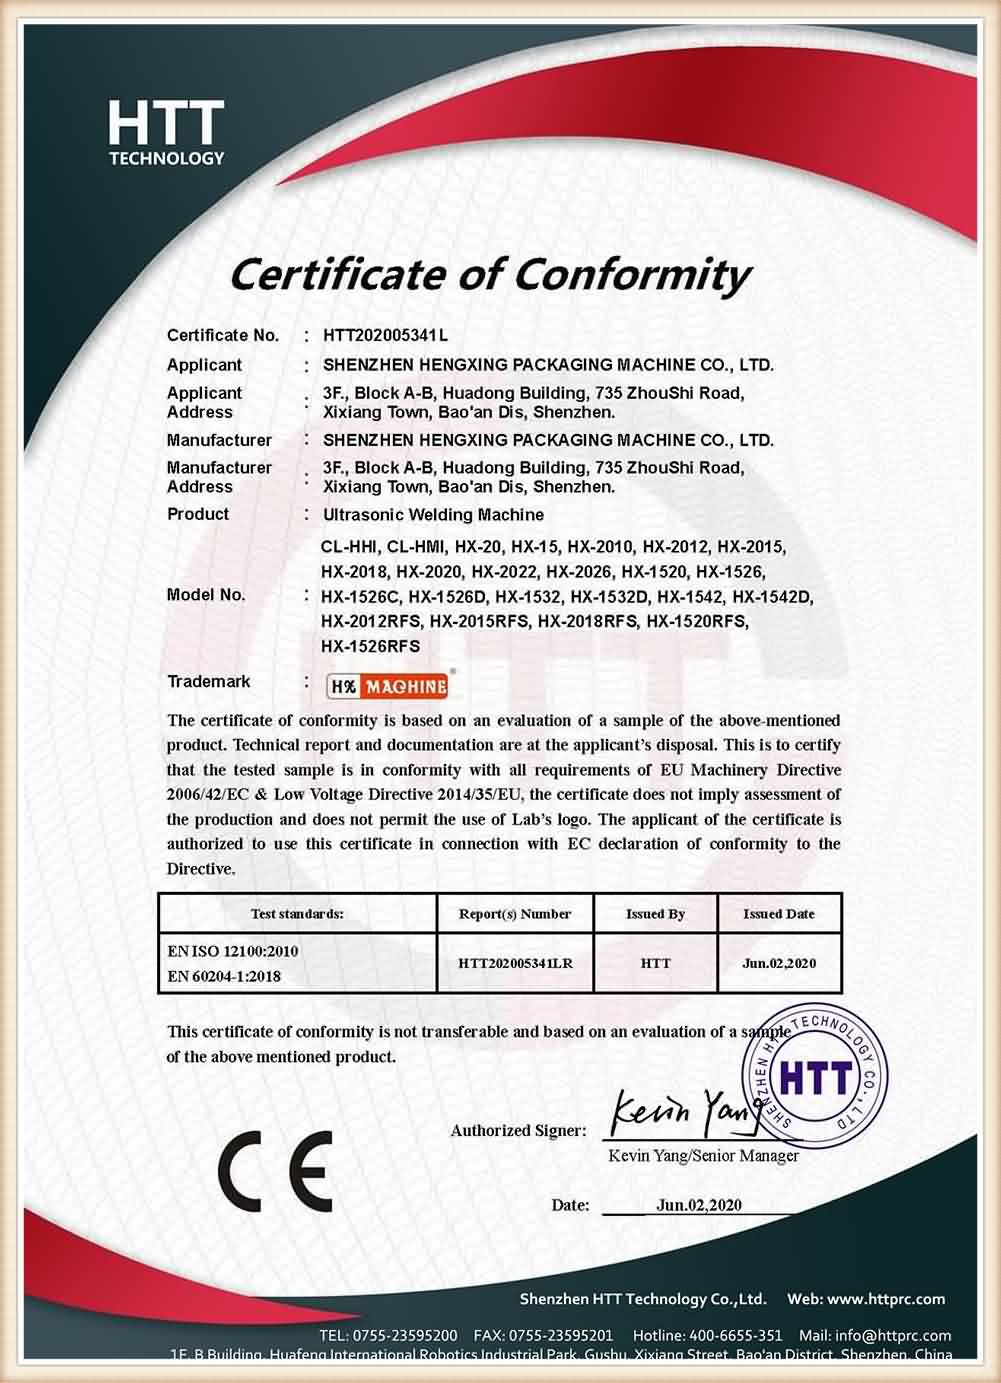 Certificate of Conformity-Ultrasonic Welding Machine